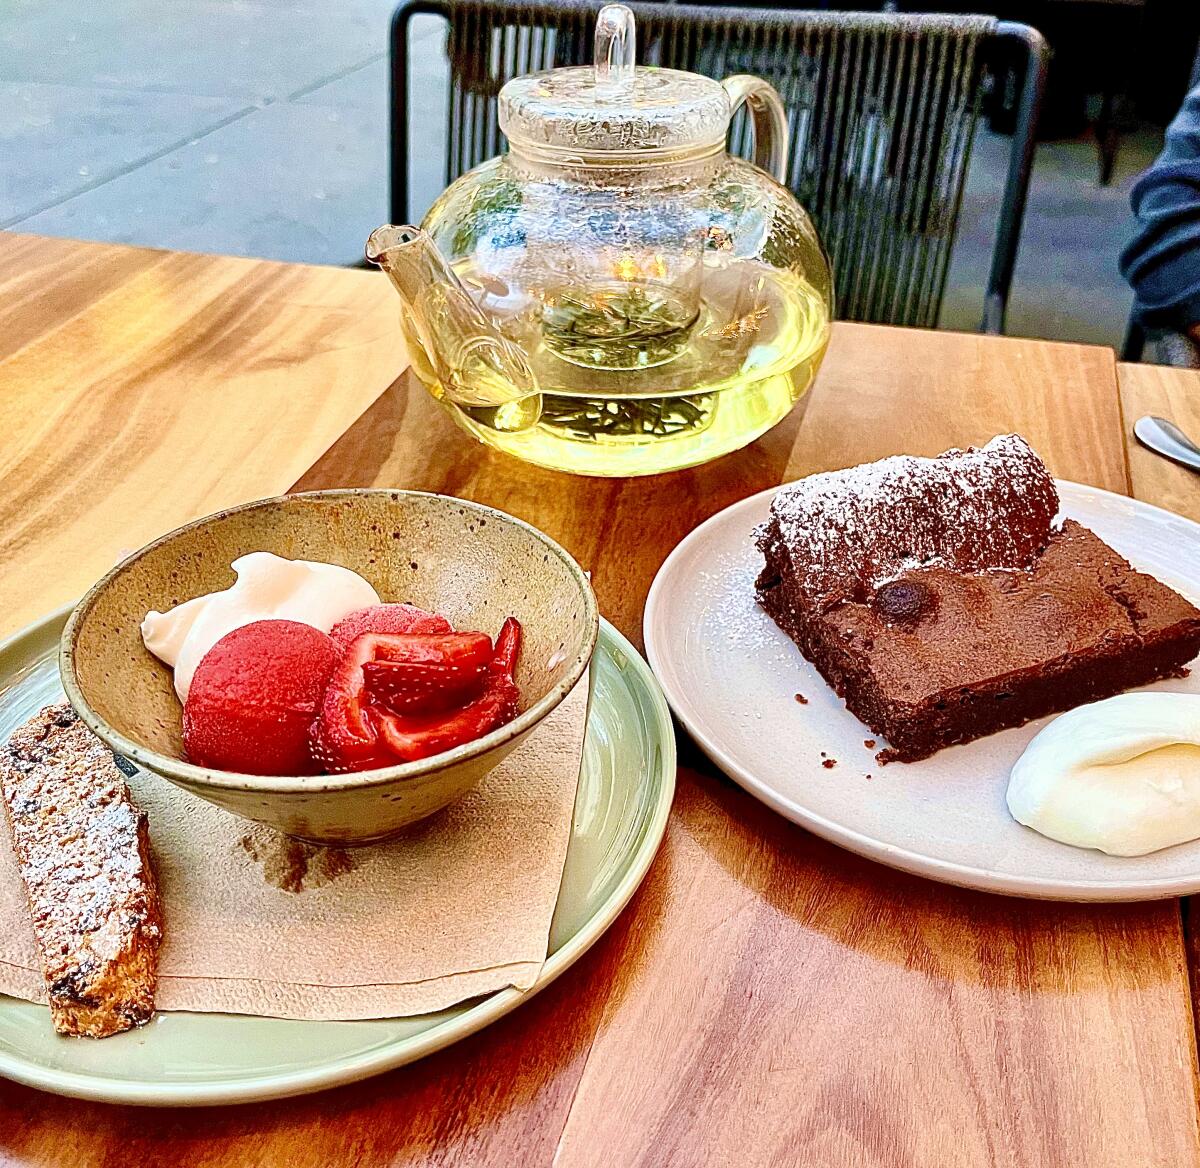 Dessert at Lulu: sorbet, brownie and tea.